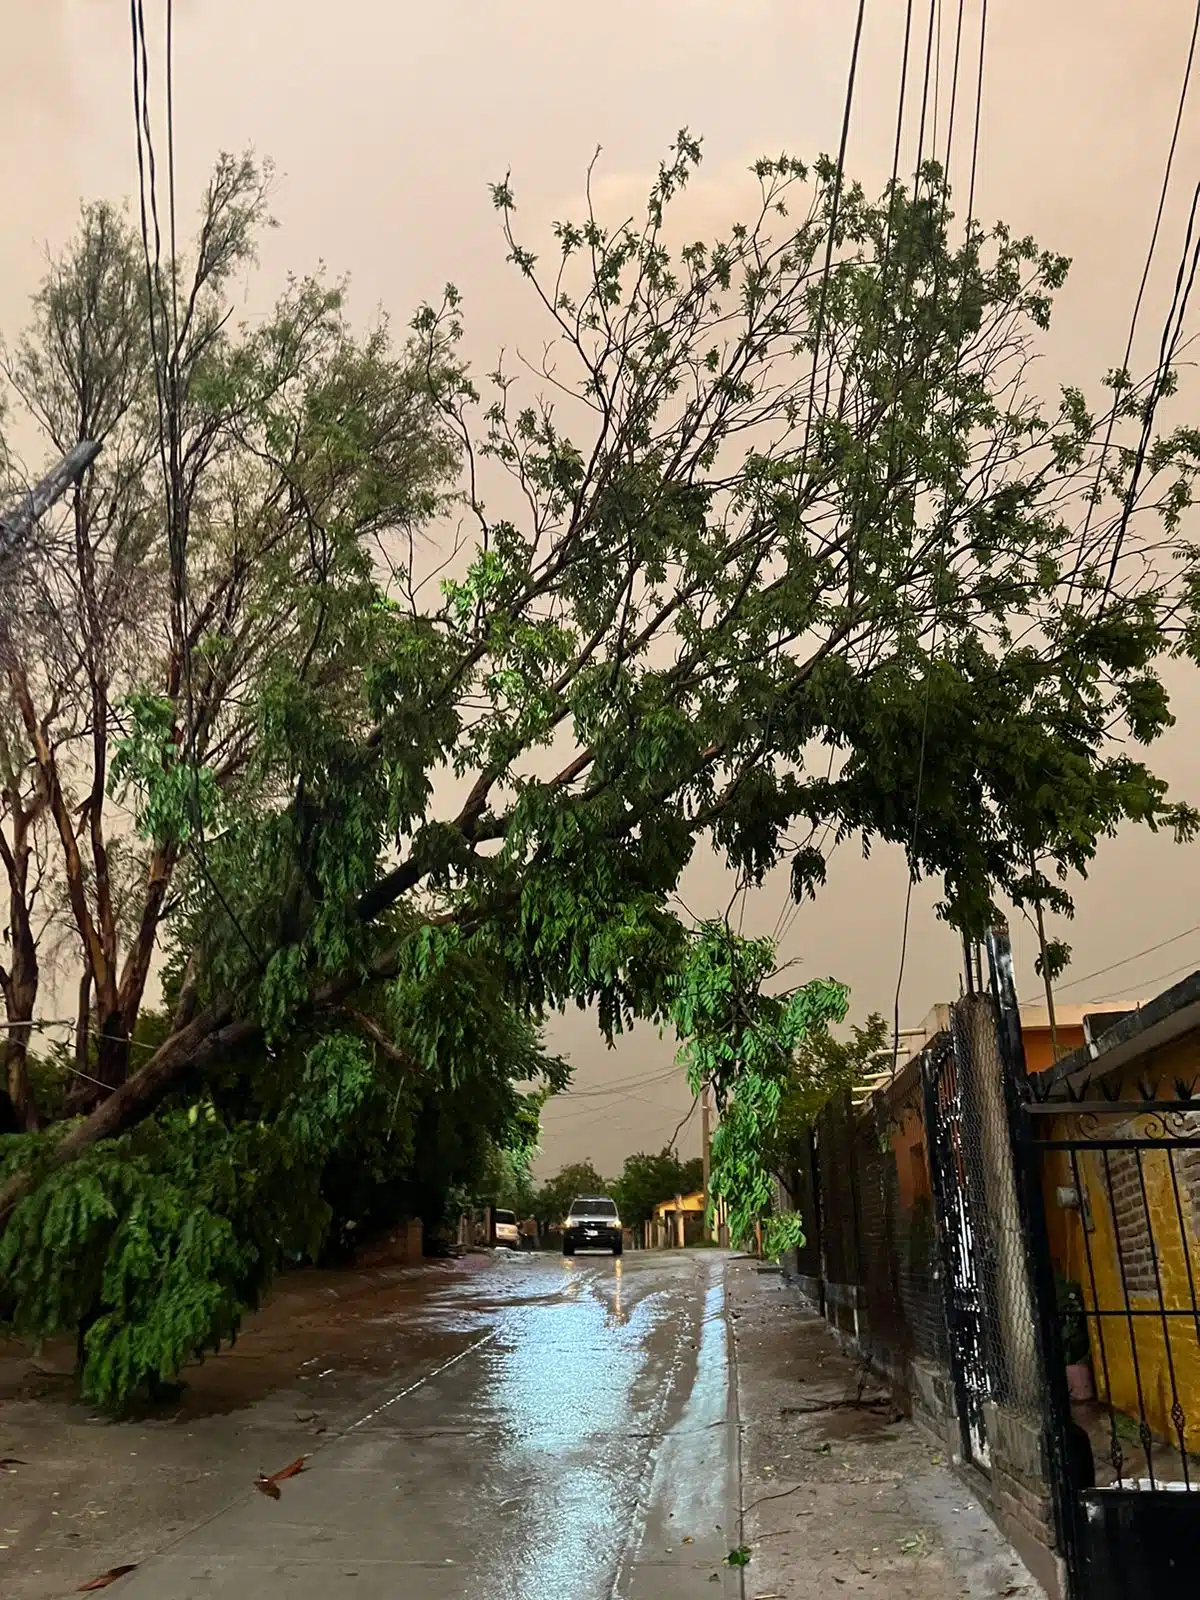 Árbol caído en dirección a una calle mojada por las lluvias en El Fuerte